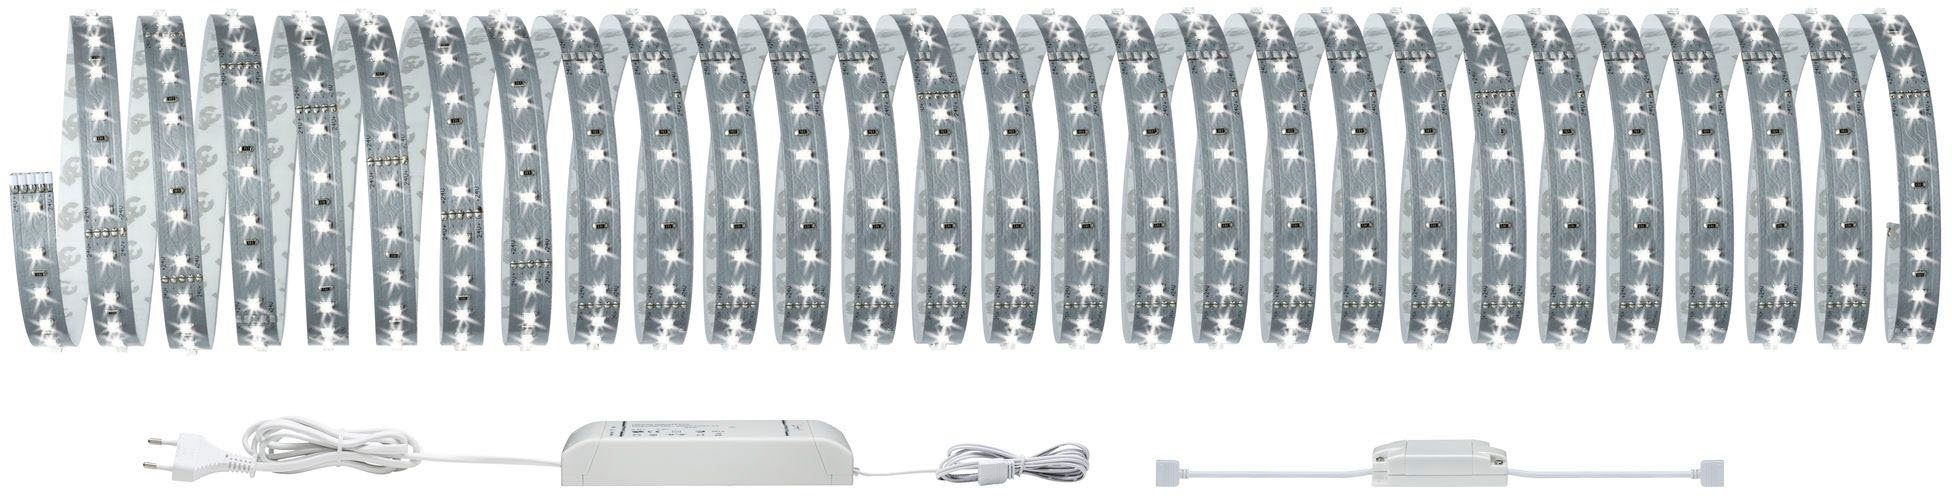 LED-Streifen 6500K, 10m Paulmann Home 550lm/m Smart Tageslichtweiß 500 MaxLED 1-flammig, 50W Basisset Basisset